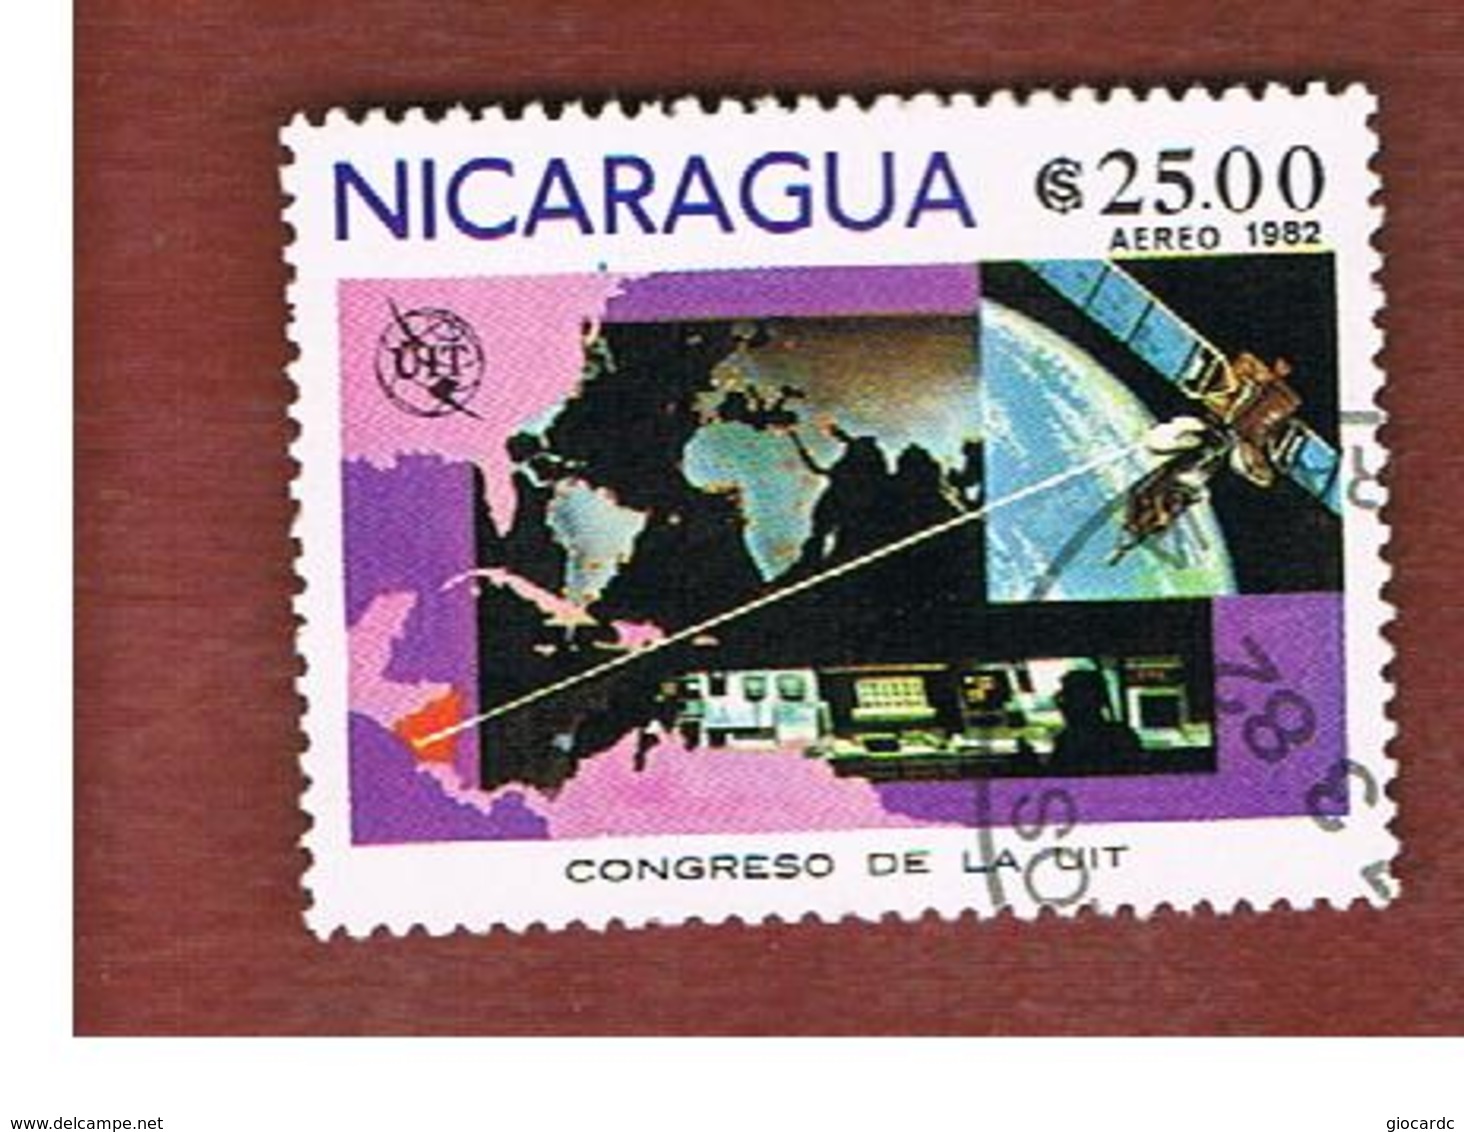 NICARAGUA - SG  2340    -    1982  UIT CONGRESS     -  USED° - Nicaragua